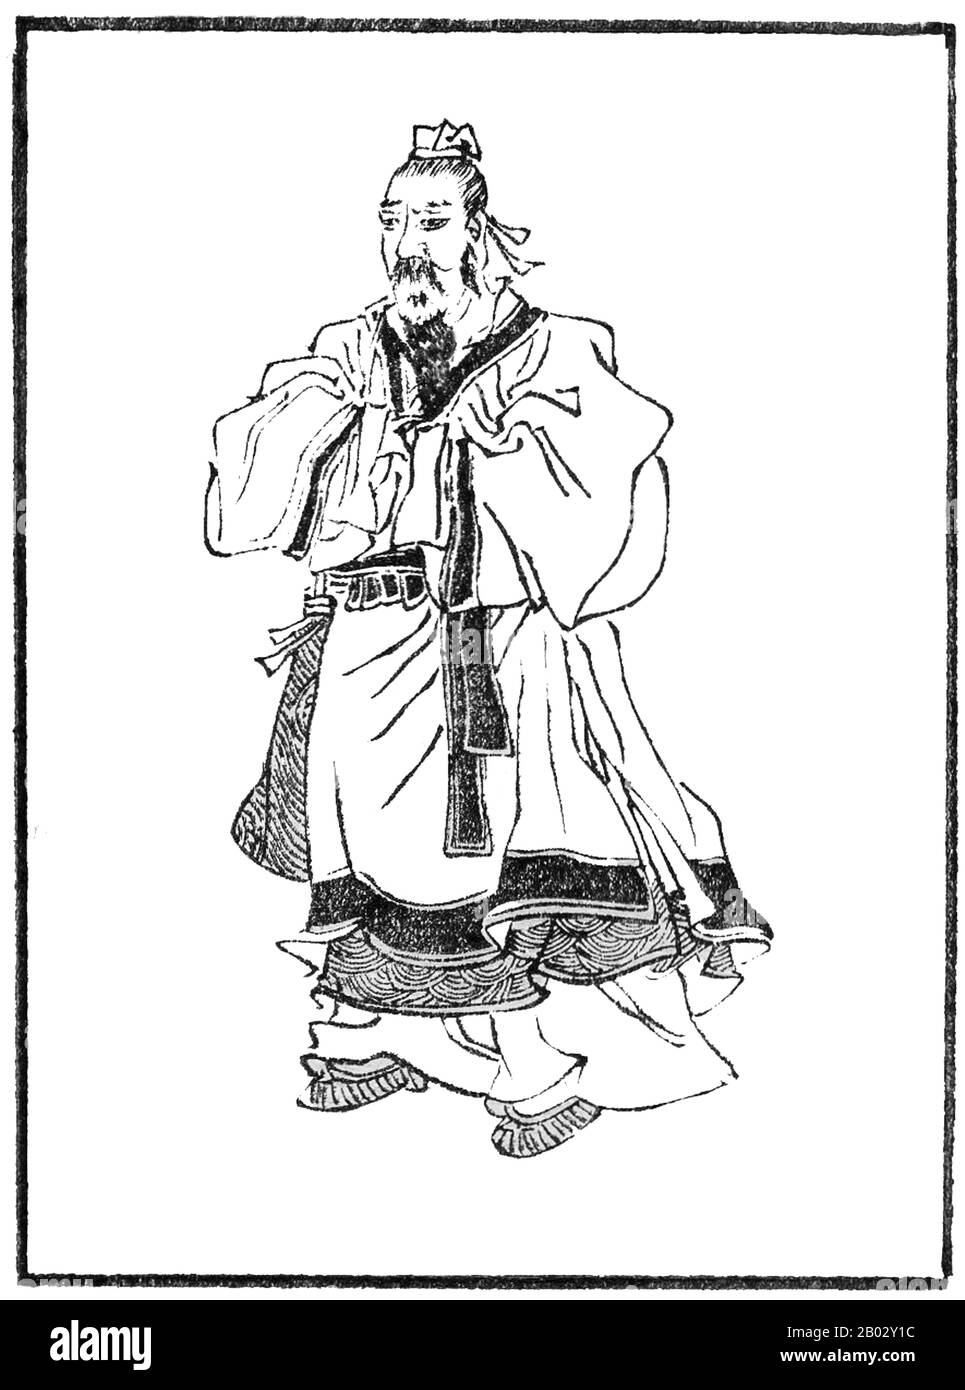 Guo Pu war ein chinesischer Schriftsteller und Gelehrter der östlichen Jin-Zeit und ist am bekanntesten als einer der führenden Kommentatoren Chinas zu alten Texten. Guo war ein taoistischer Mystiker, Geomancer, Sammler von seltsamen Geschichten, Herausgeber alter Texte und Eudit-Kommentator. Er ist der Autor des "Buches der Bestattung", der ersten und maßgeblichsten Quelle der Fengshui-Doktrin und das erste Buch, das sich mit dem Konzept des Fengshui in der Geschichte Chinas befassen soll, was Guo Pu zum ersten Menschen macht, der historisch Fengshui definiert hat, Und deshalb gilt Guo Pu meist als Vater von Fengshui. Stockfoto